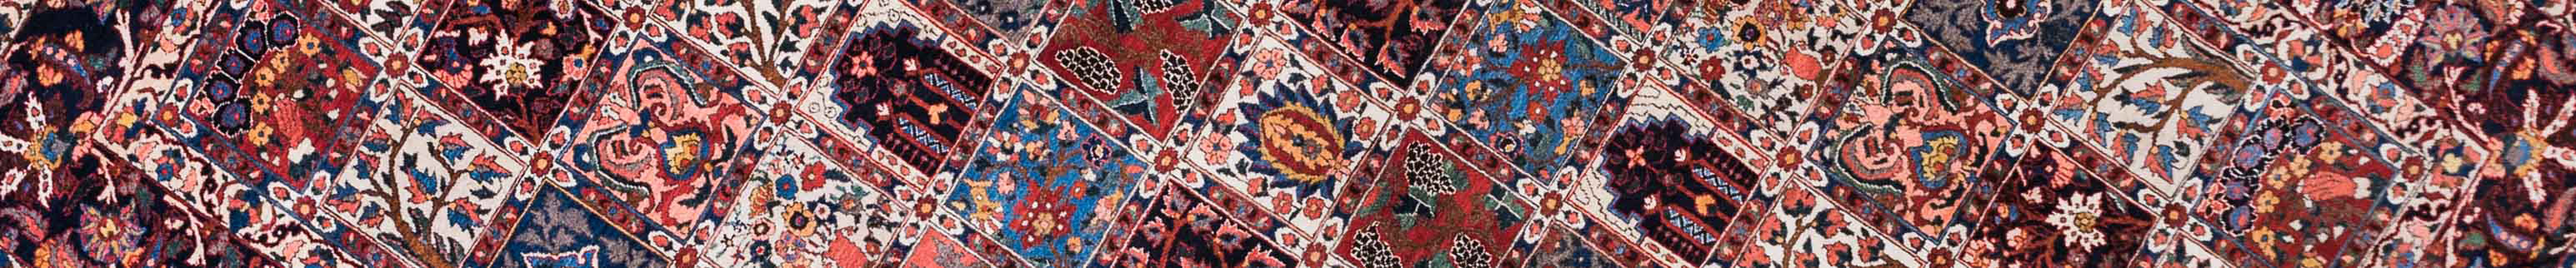 Bakhtiar Persian Carpet Rug N1Carpet Canada Montreal Tapis Persan 3950